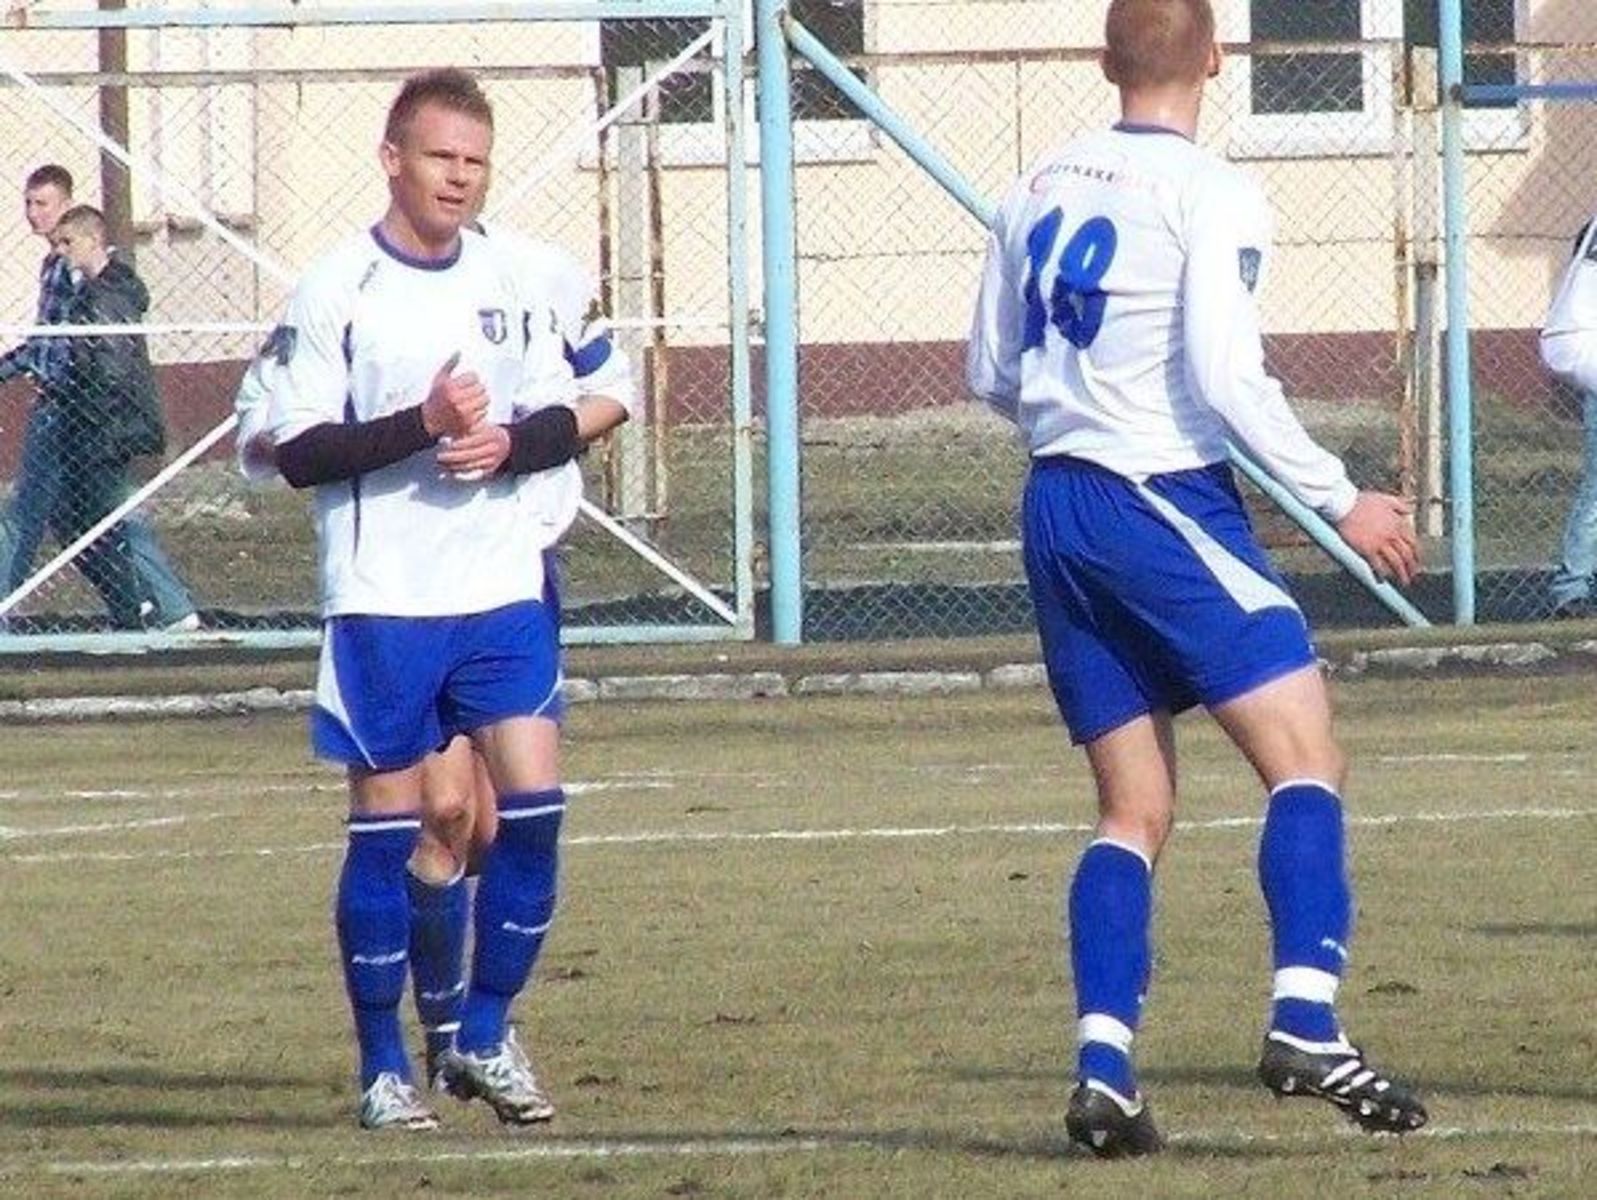 Dwie bramki Sobocińskiego i jedno trafienie Kołakowskiego dało ekipie z Wikielca zwycięstwo w spotkaniu ze Startem. Fot. Emil Marceki